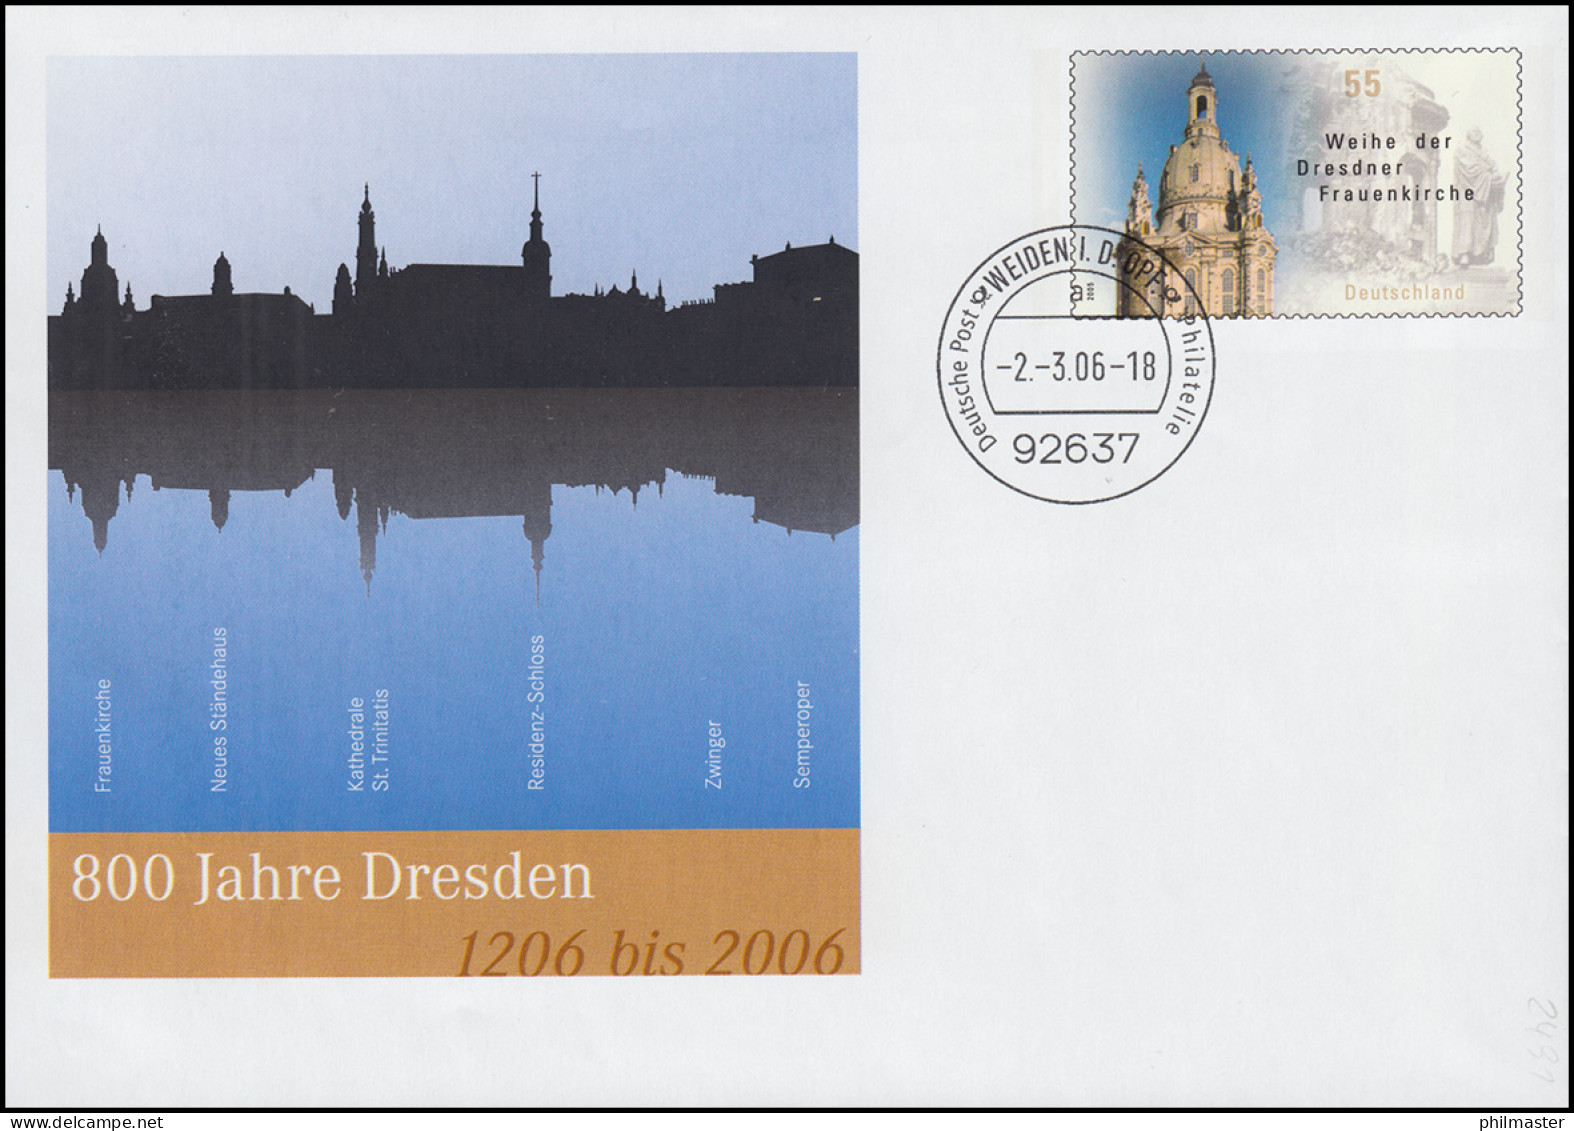 USo 112 Jubiläum 800 Jahre Dresden 2006, VS-O Weiden 2.3.06 - Sobres - Nuevos